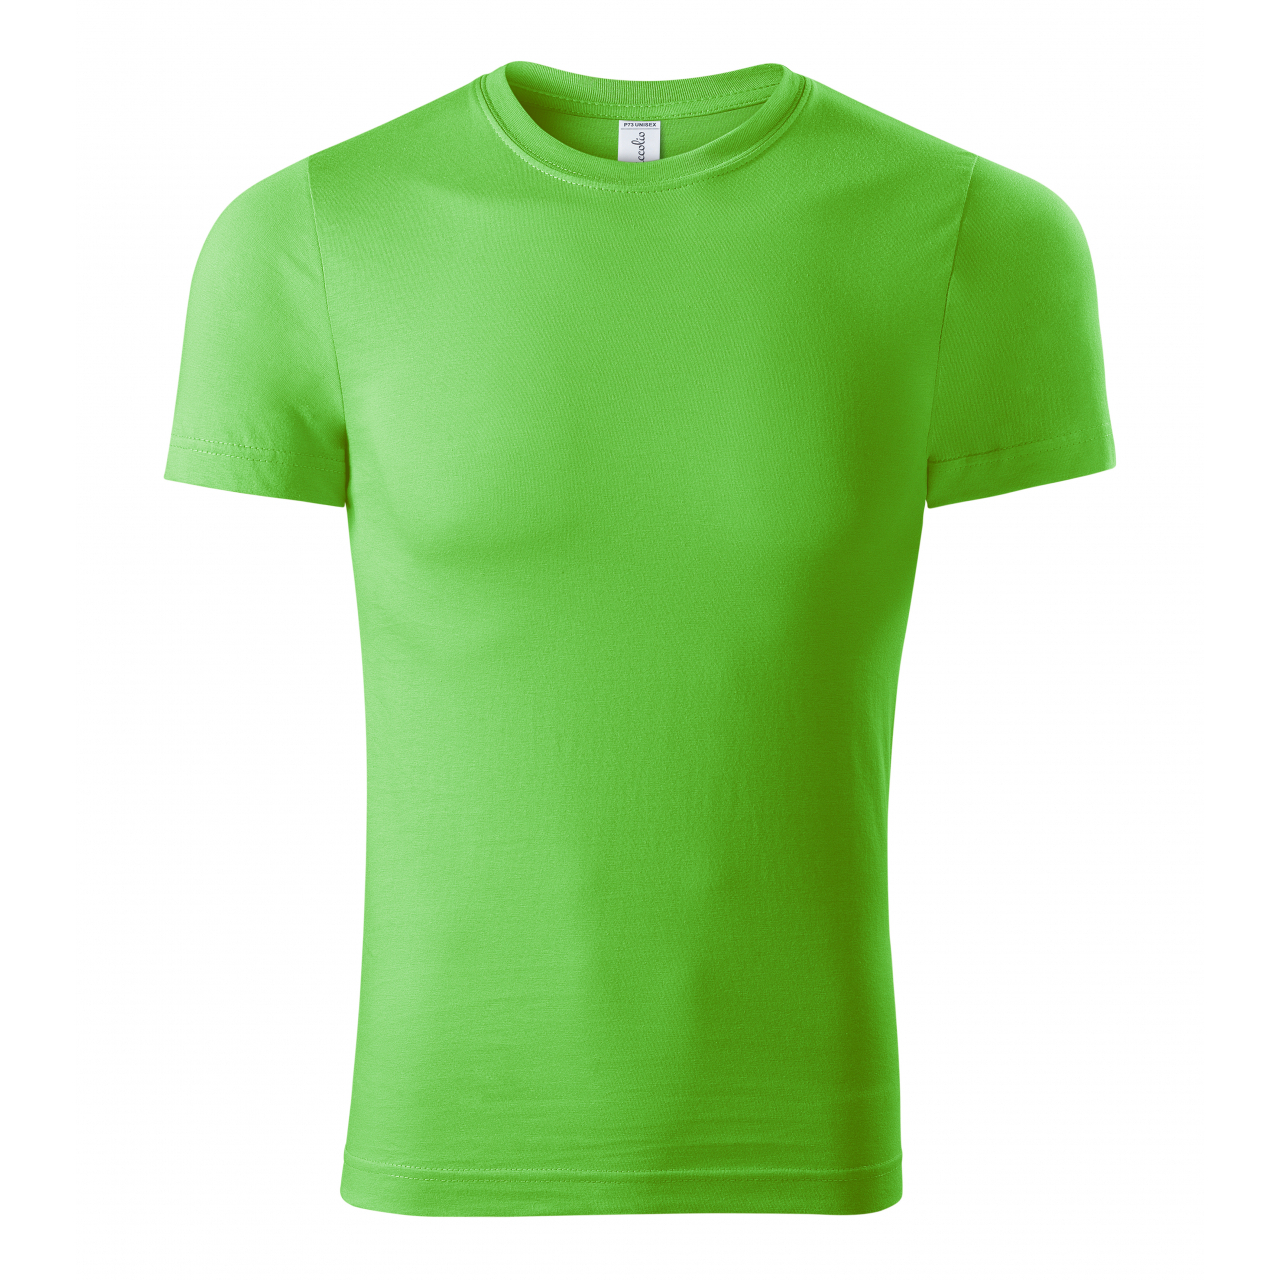 Tričko unisex Piccolio Paint - zelené svítící, XL